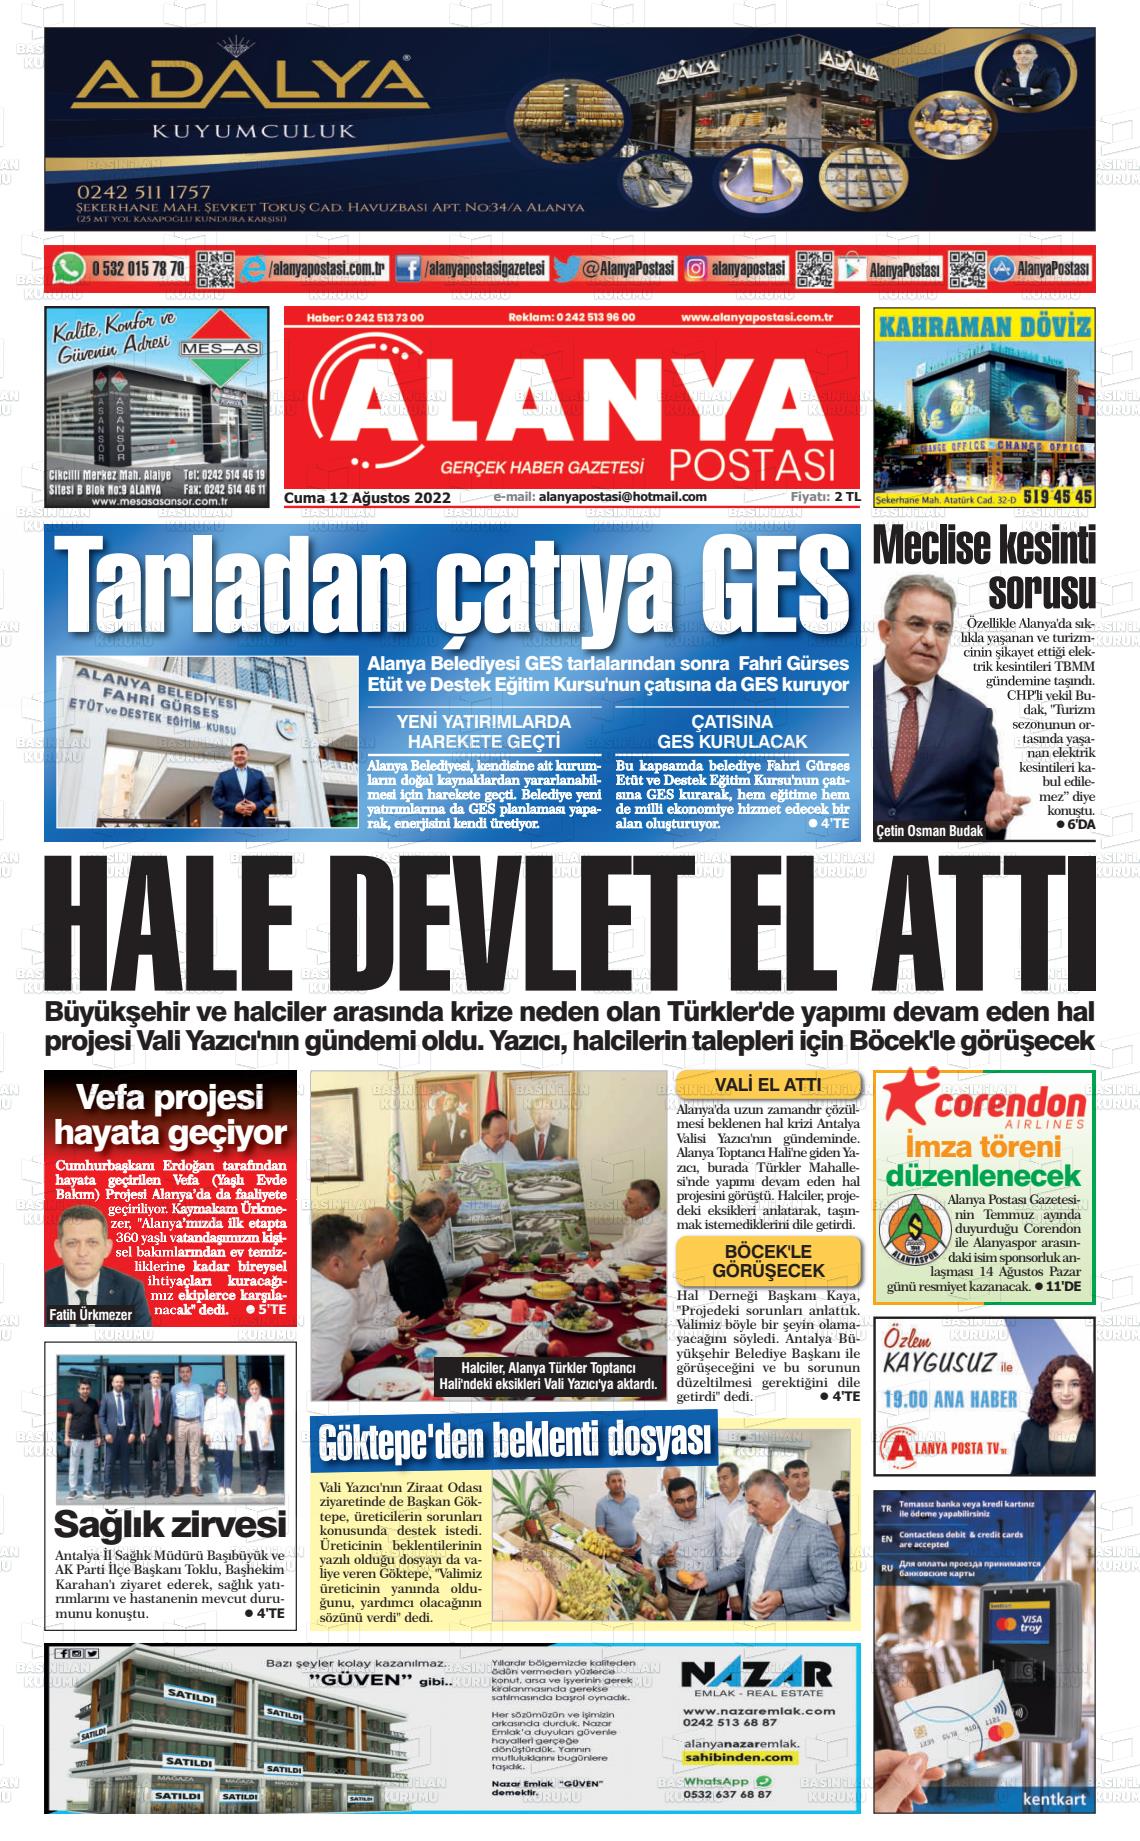 12 Ağustos 2022 Alanya Postası Gazete Manşeti